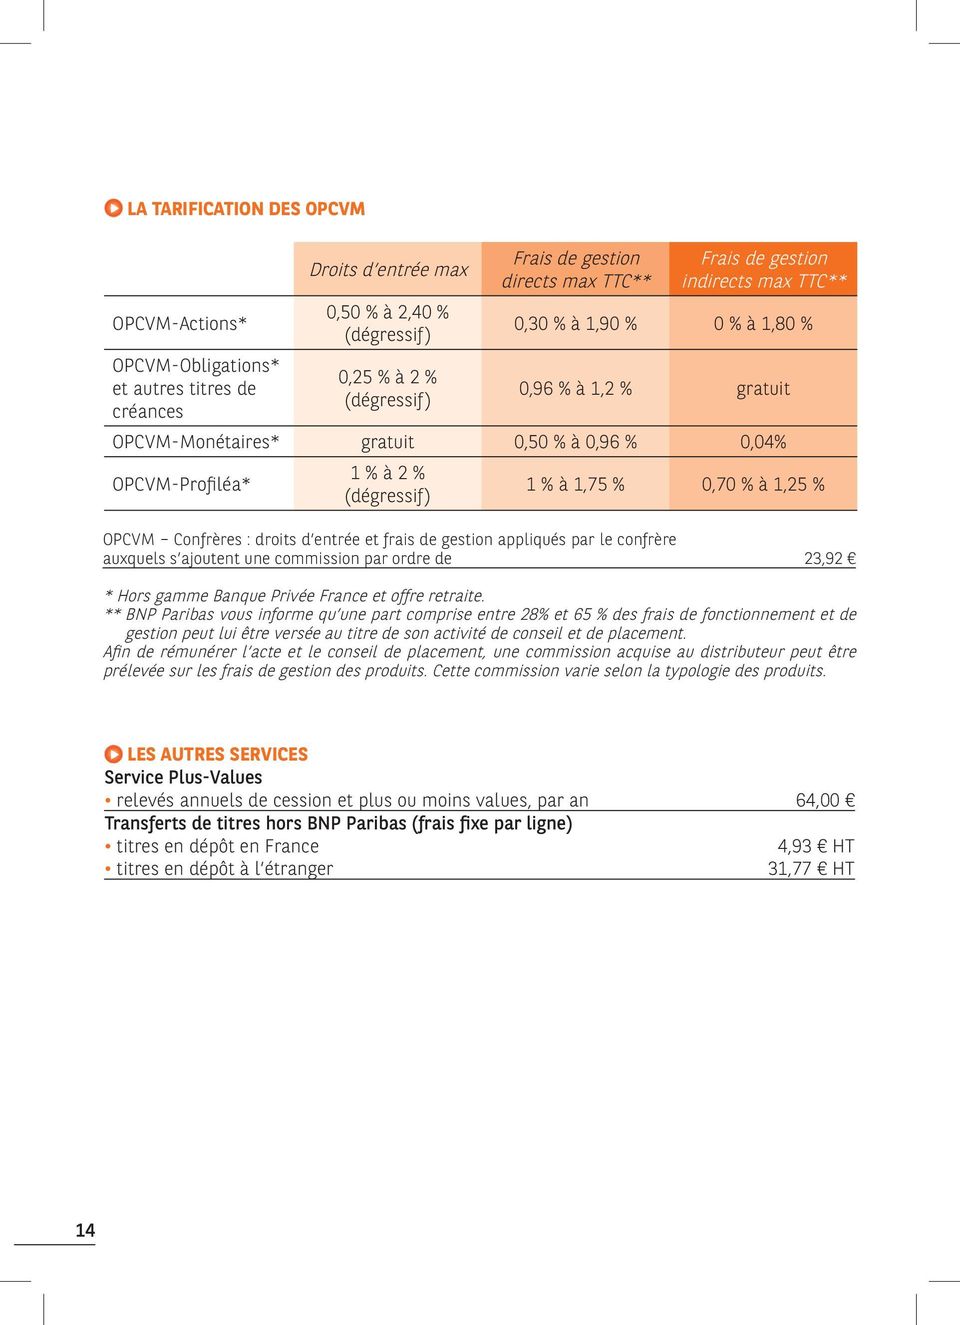 1,25 % OPCVM Confrères : droits d entrée et frais de gestion appliqués par le confrère auxquels s ajoutent une commission par ordre de 23,92 * Hors gamme Banque Privée France et offre retraite.